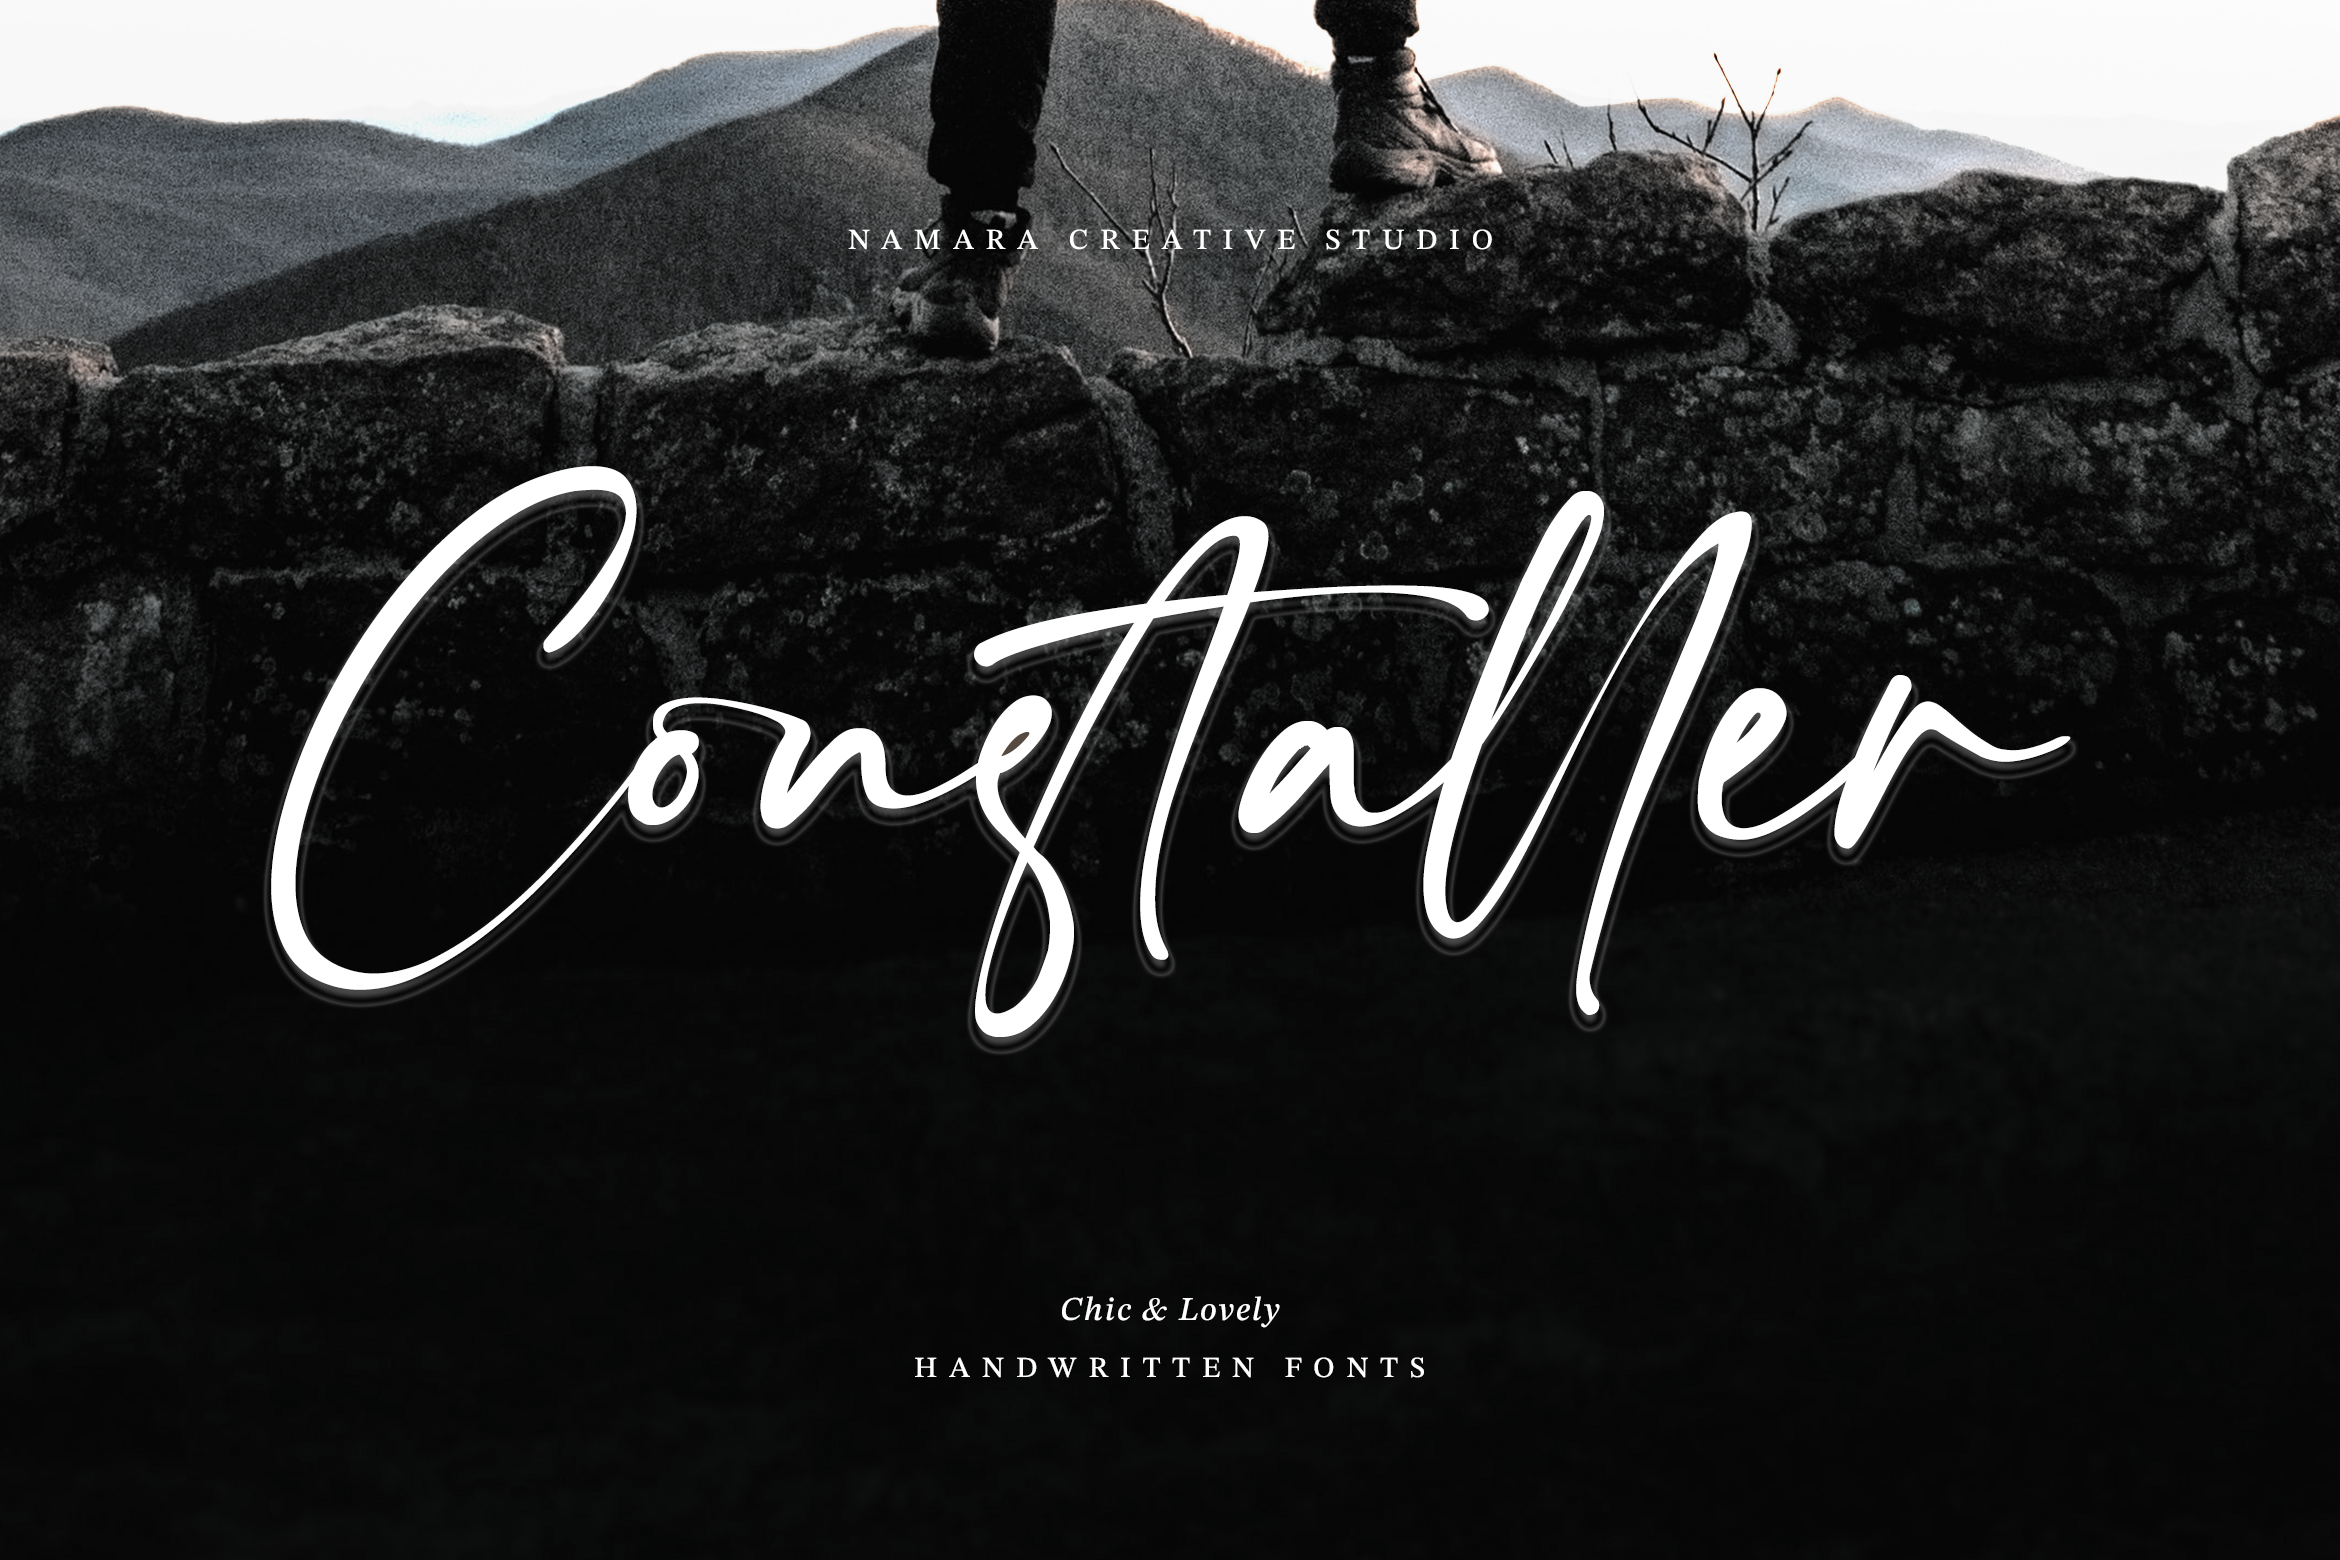 Constaller